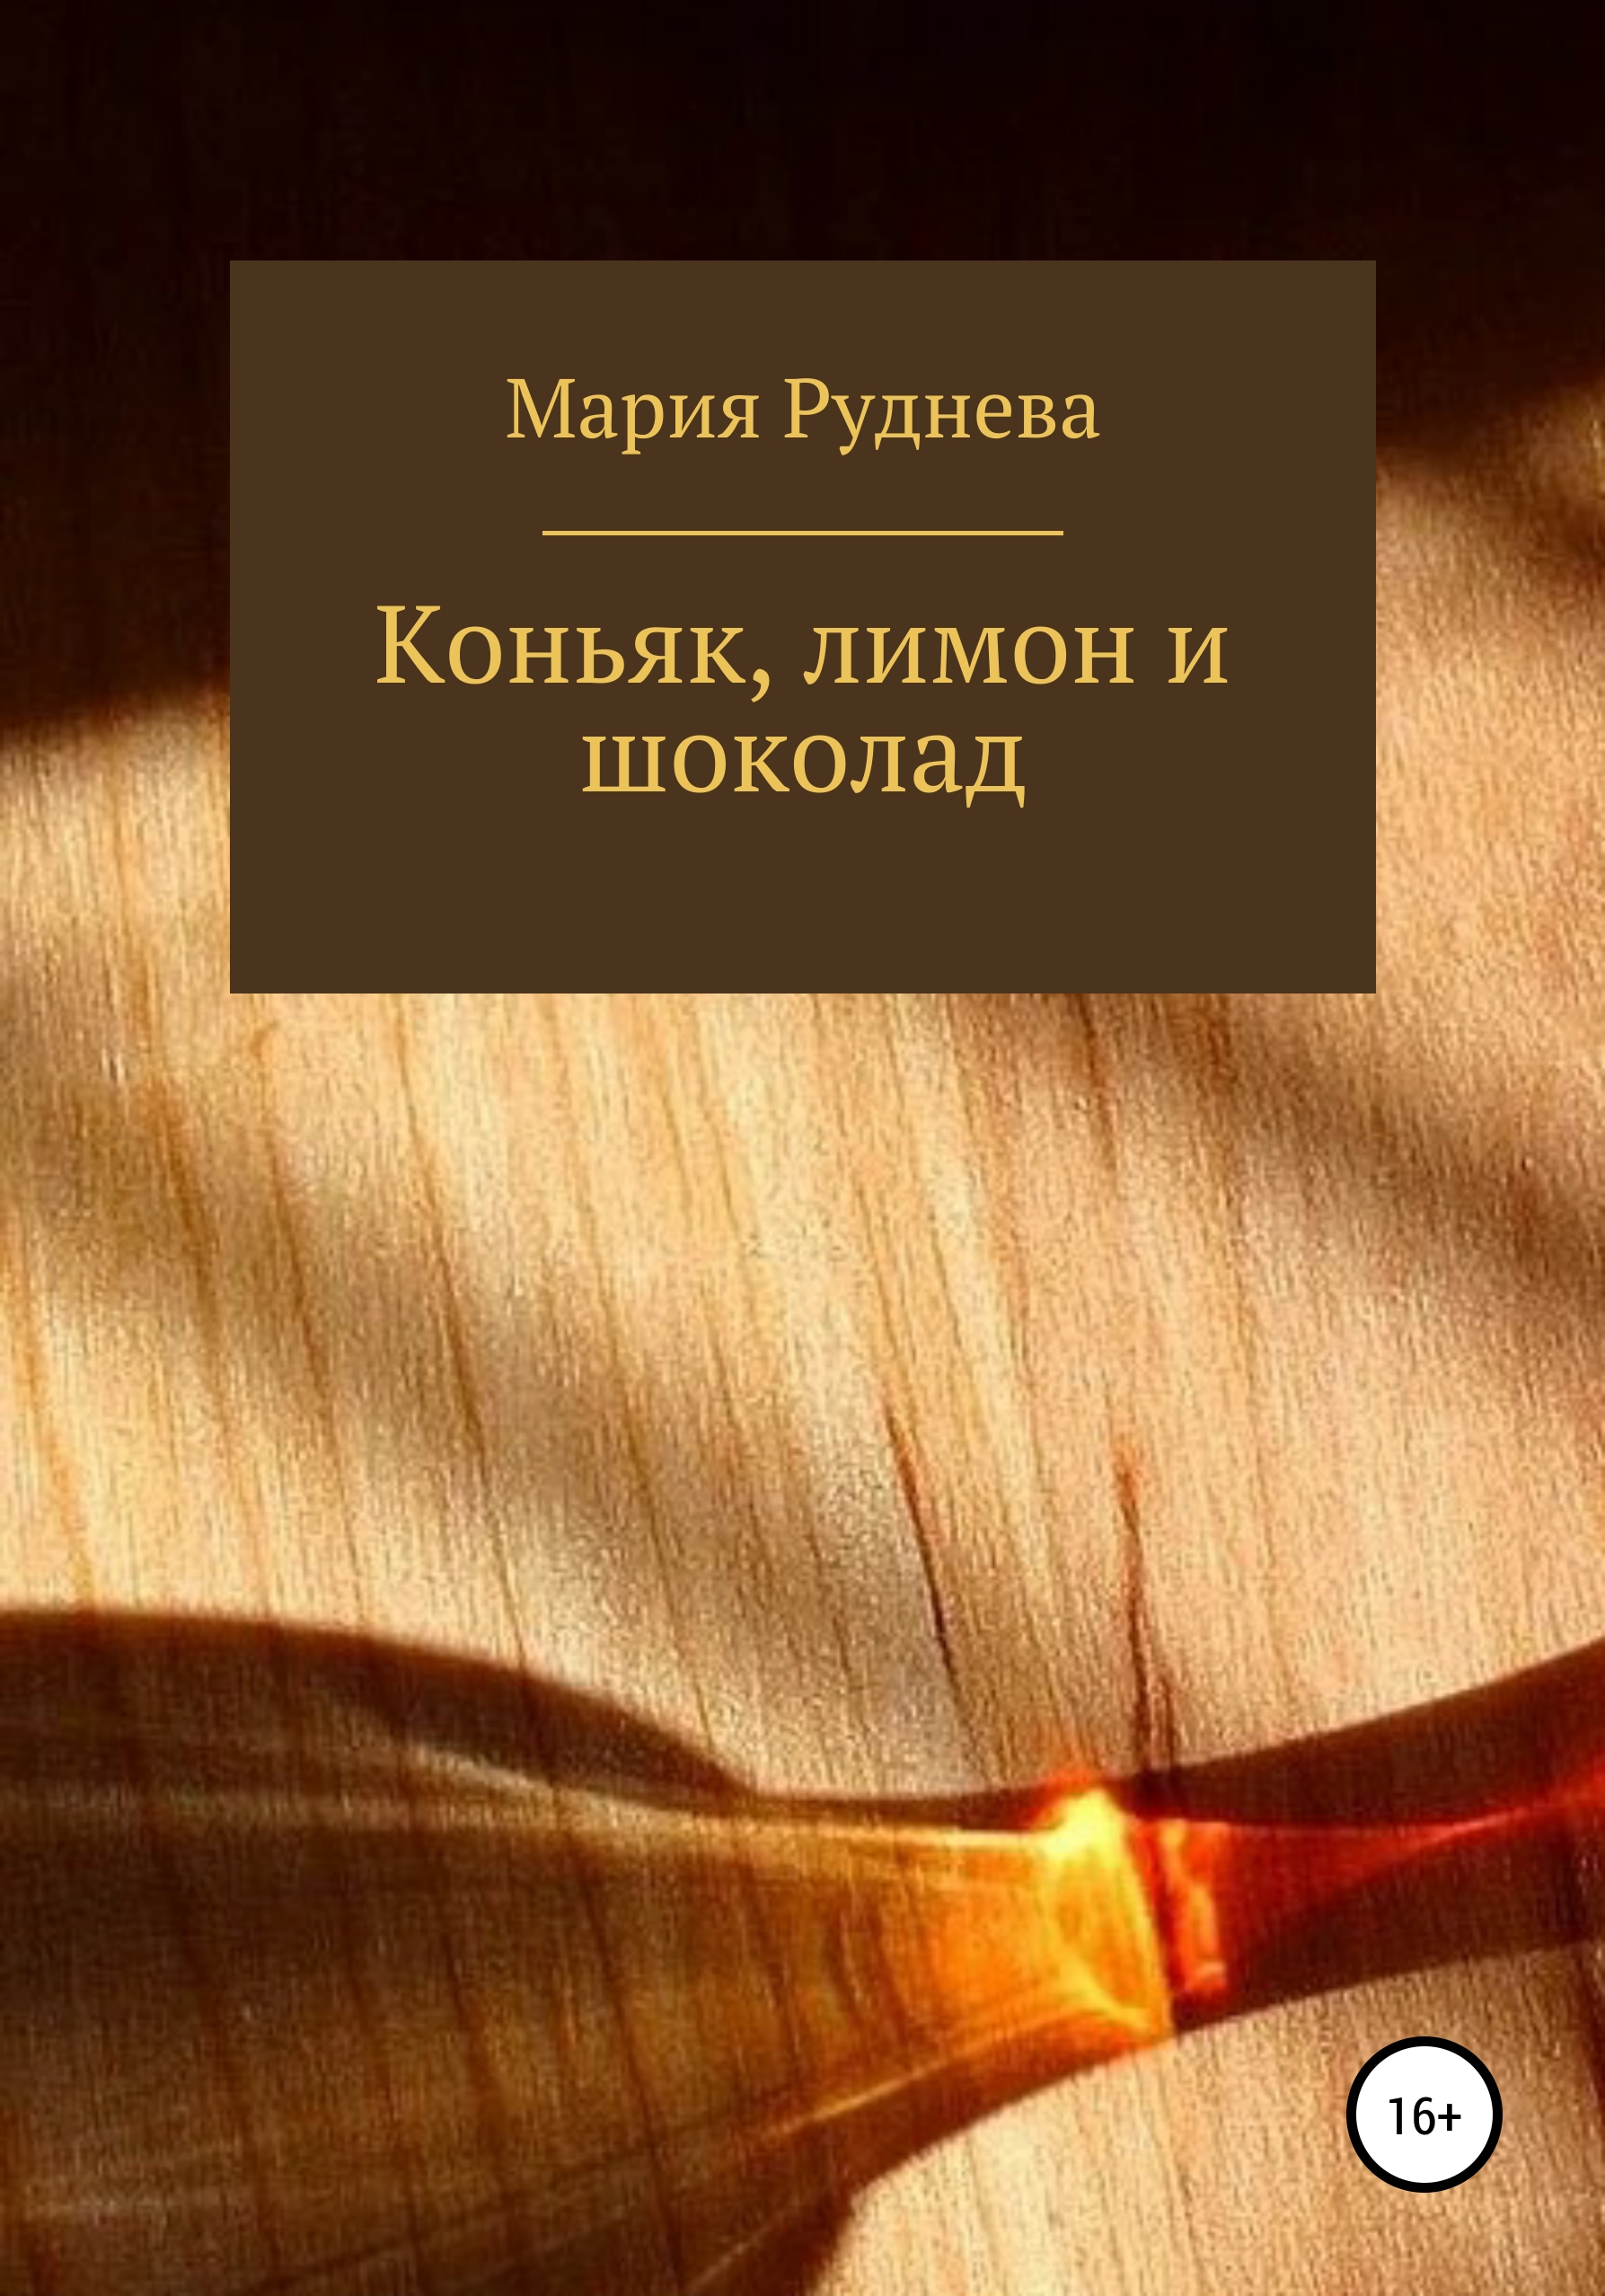 Коньяк, лимон и шоколад – Мария Руднева